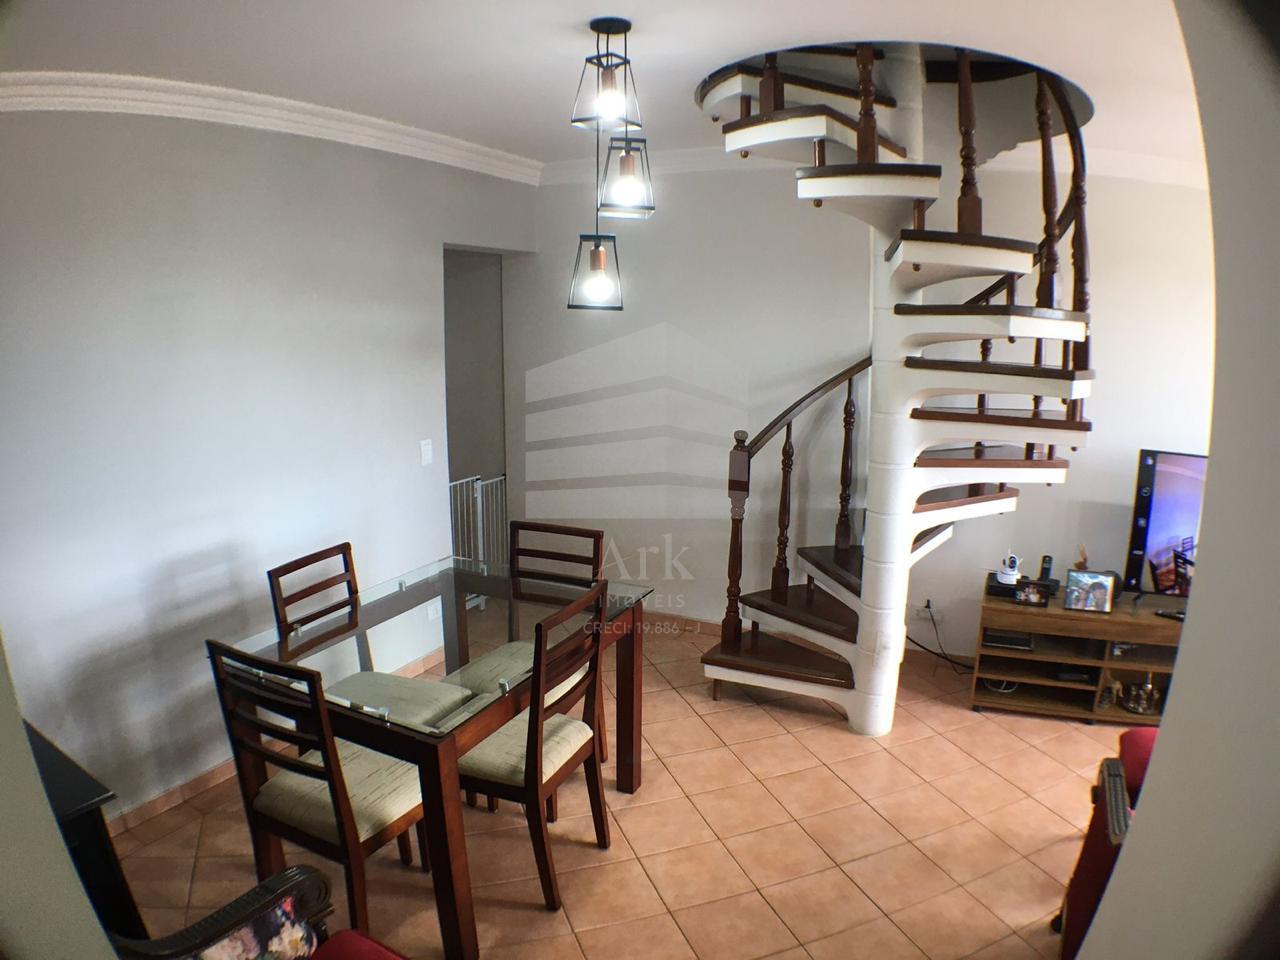 Apartamento duplex pra locação e venda no Ipiranga, 144m , 3 q...